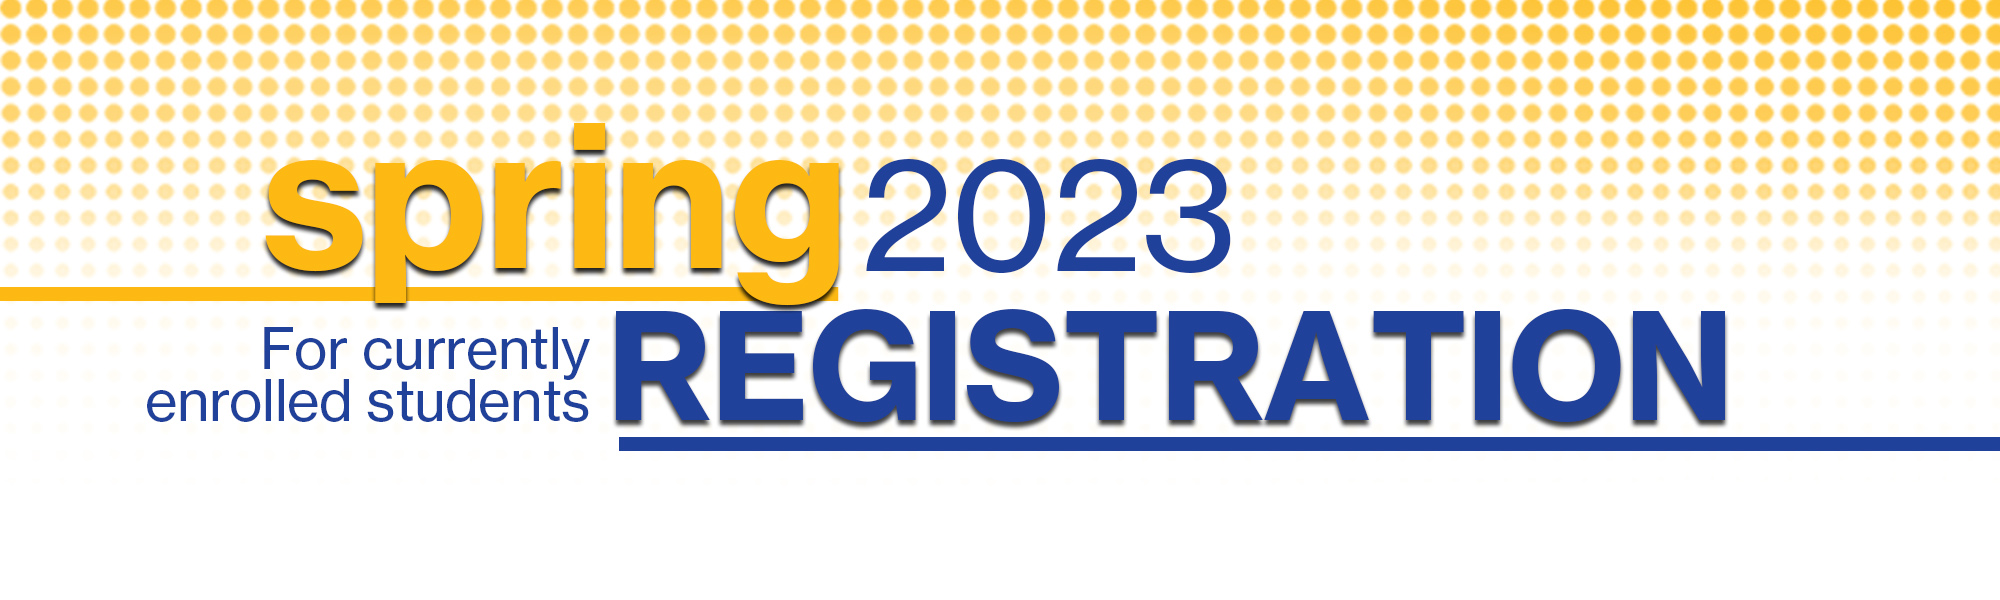 Spring 2023 Registration 